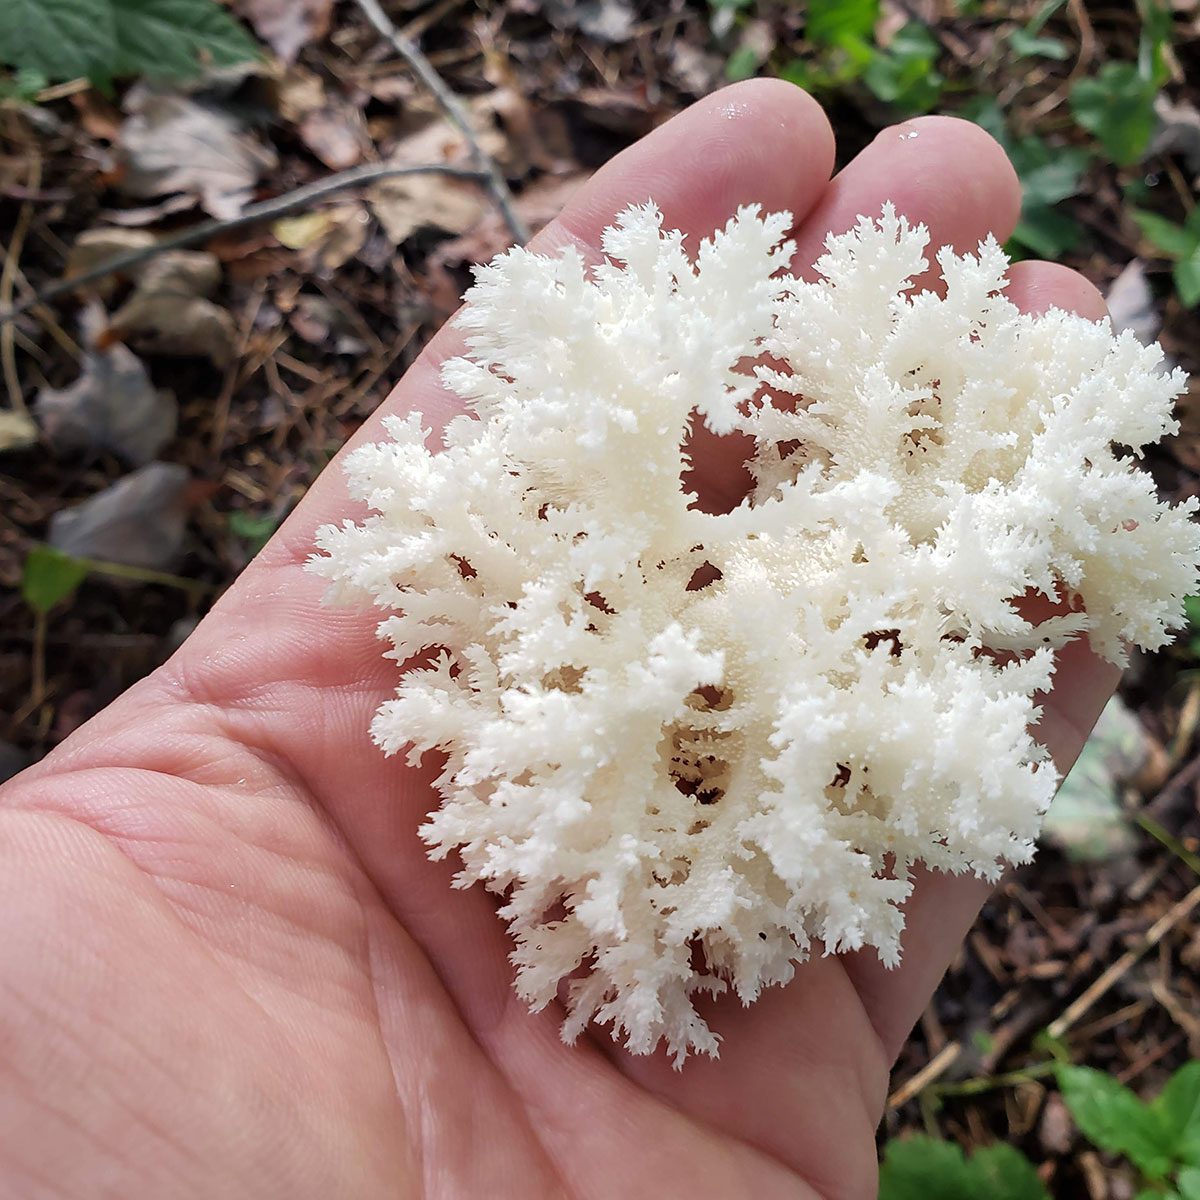 Handful of coral mushrooms